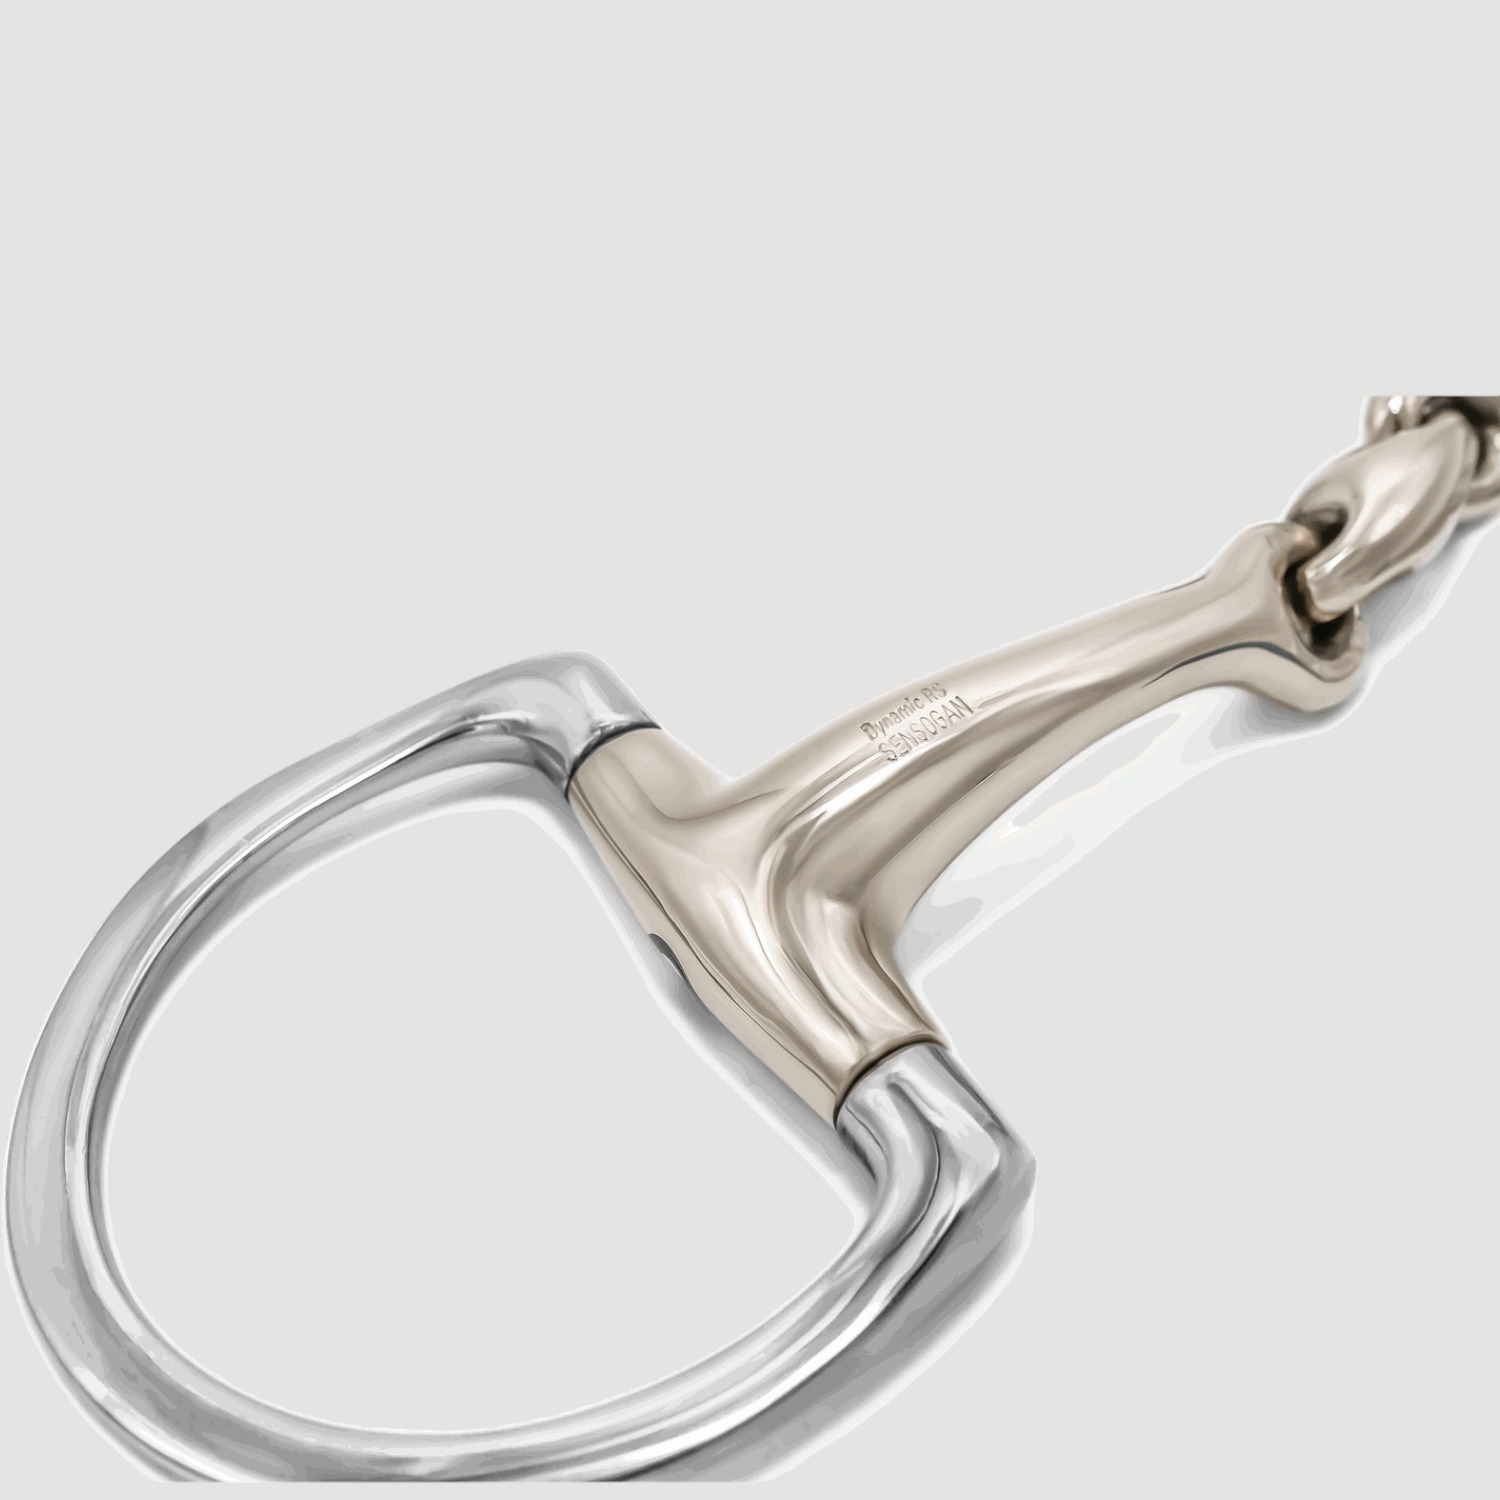 Sprenger Dynamic RS Olivenkopfgebiss m. D-förmigen Ringen doppelt gebrochen 16mm